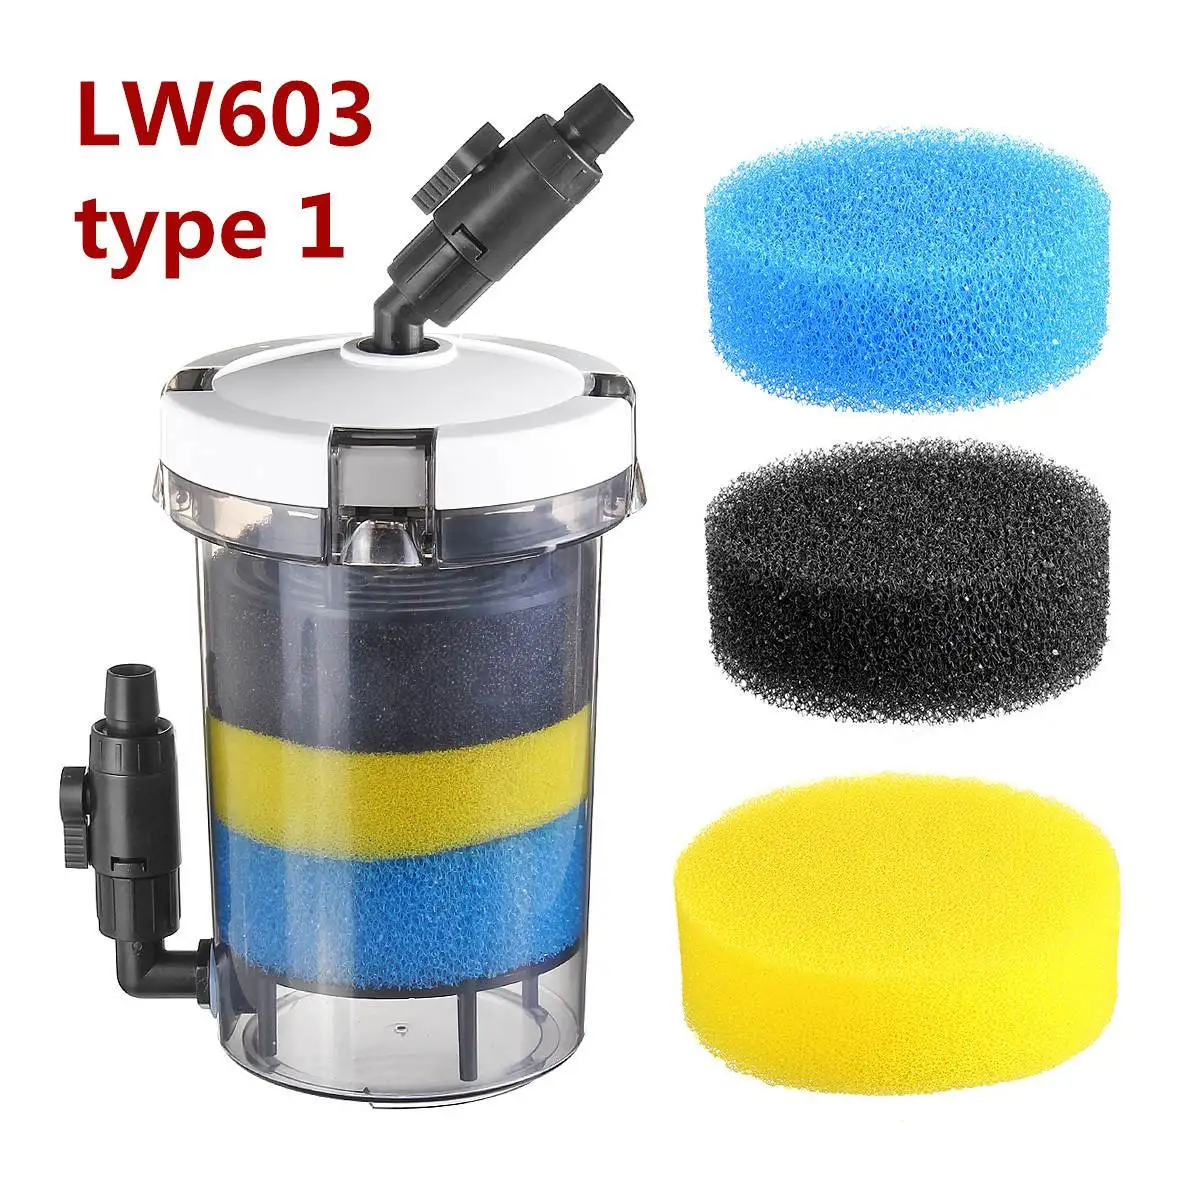 15W 220 V-240 V аквариум фильтр ультра-тихий внешний аквариумный фильтр ведро аквариум фильтр насоса LW602 LW603 w/Губка аксессуары - Цвет: LW603 type 1